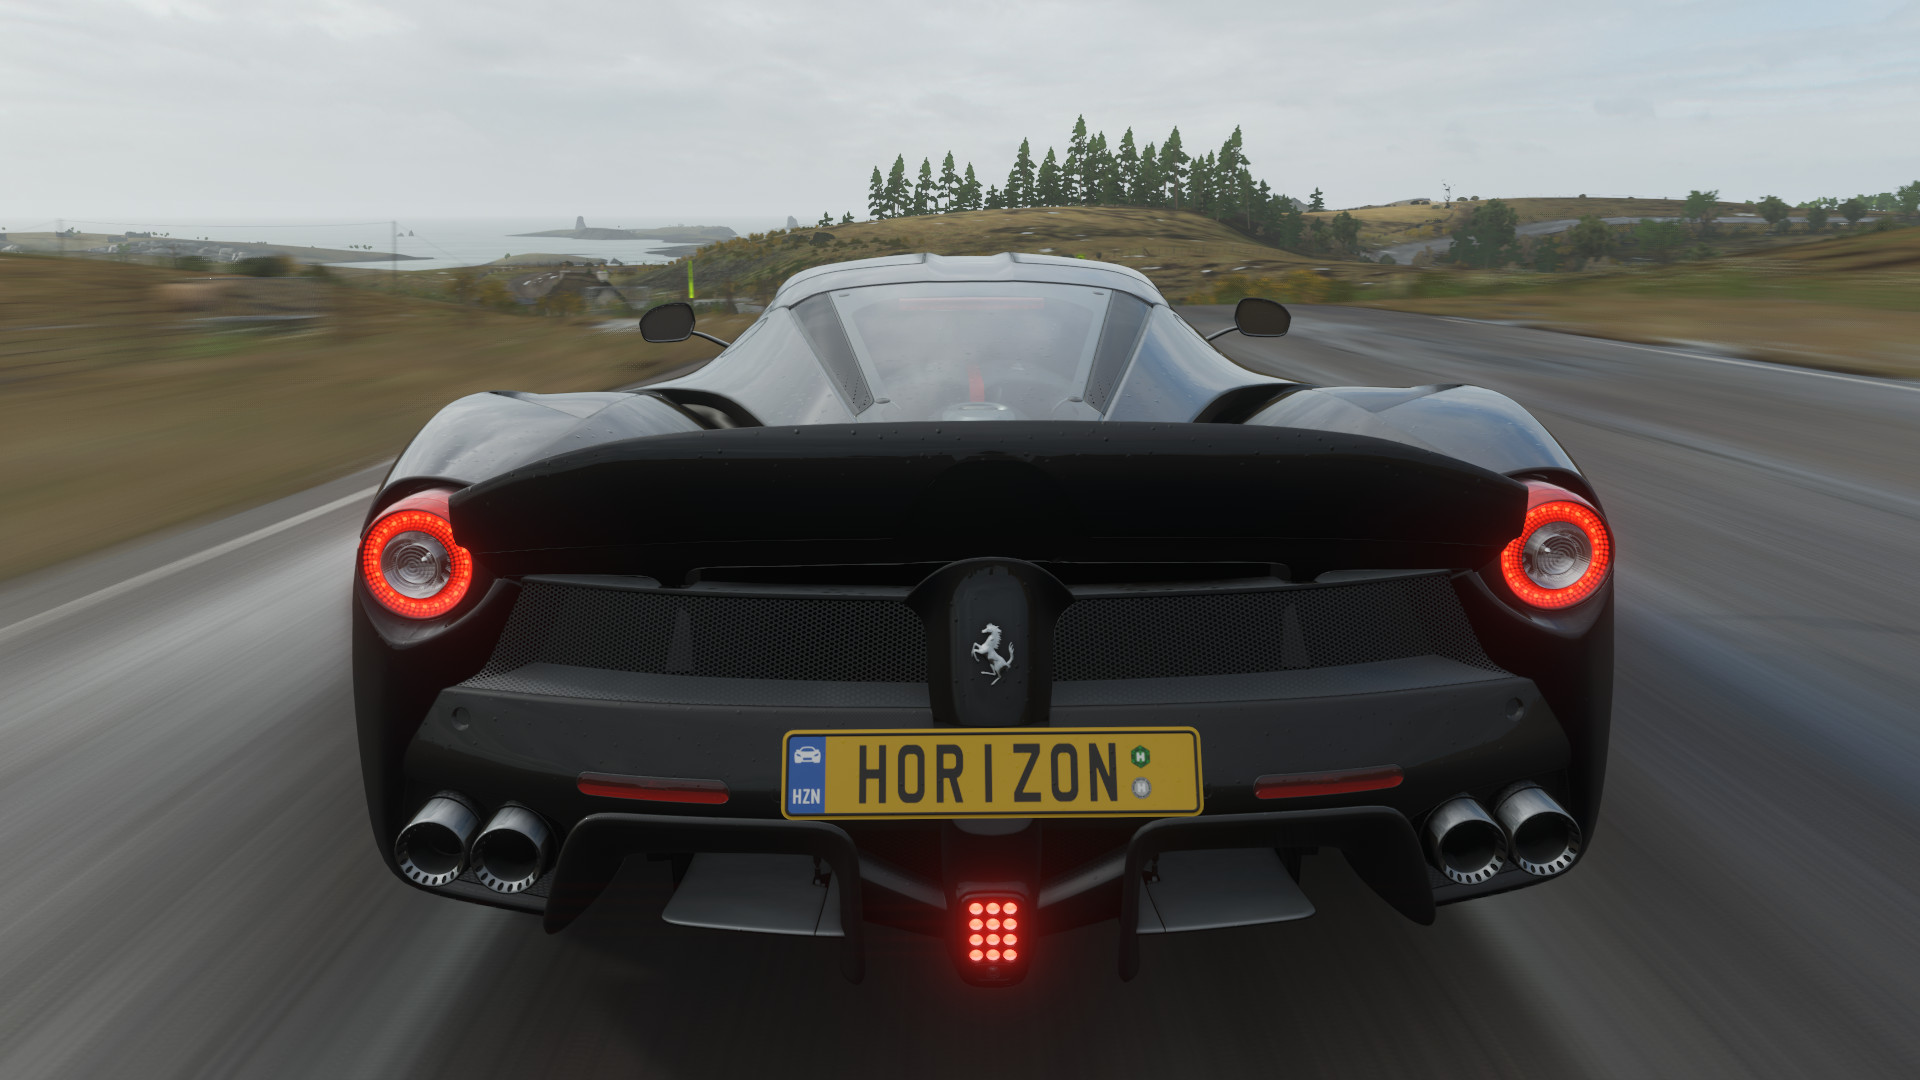 Forza Forza Horizon 4 Ferrari Ferrari LaFerrari Rear View 1920x1080